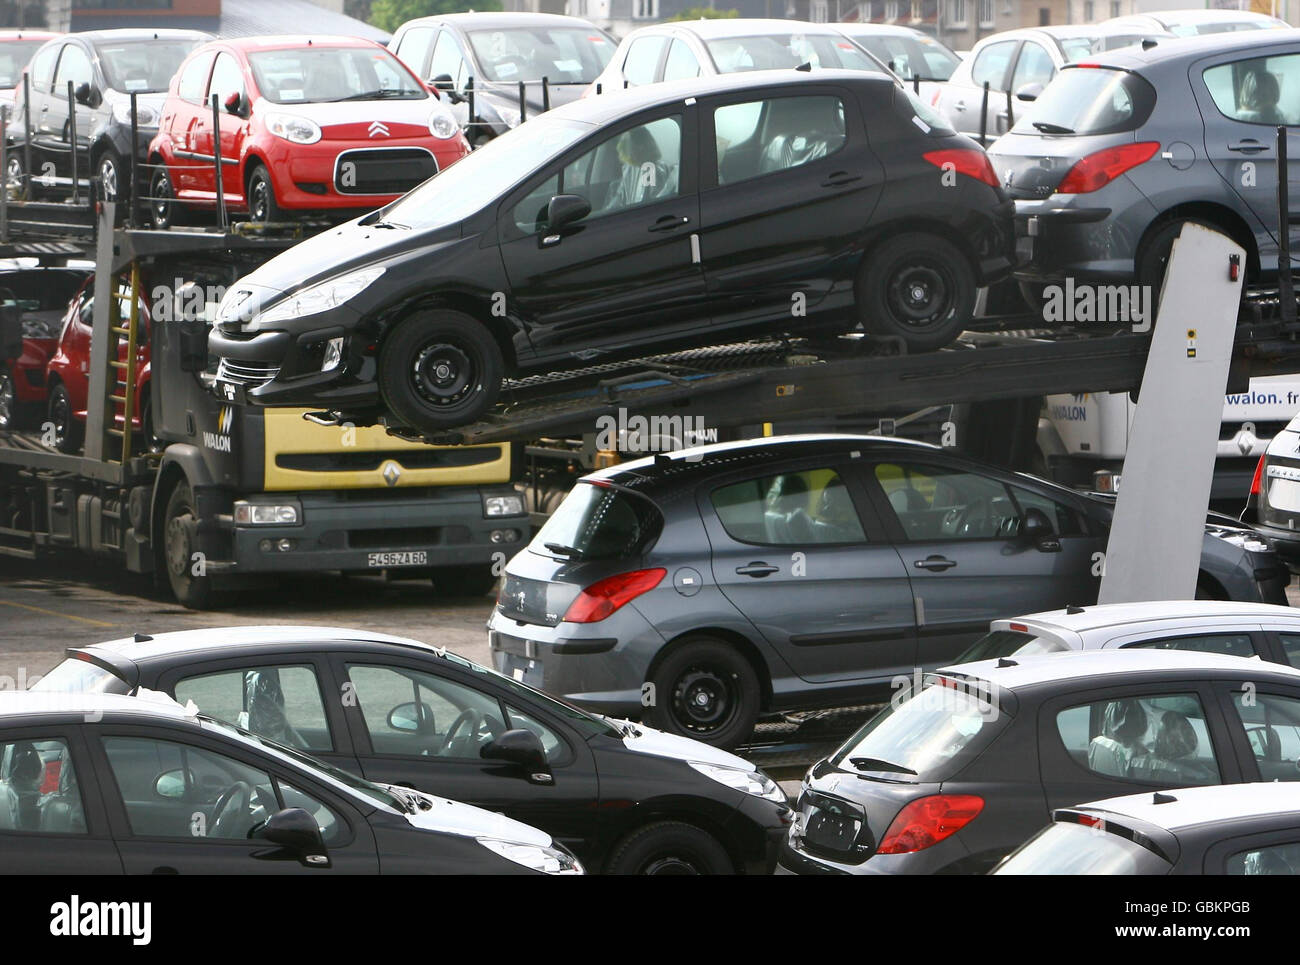 De nouvelles voitures Citroën et Peugeot à conduite à droite dans un complexe de Calais, en France, les chiffres des ventes de voitures au Royaume-Uni continuent d'être faibles. Banque D'Images